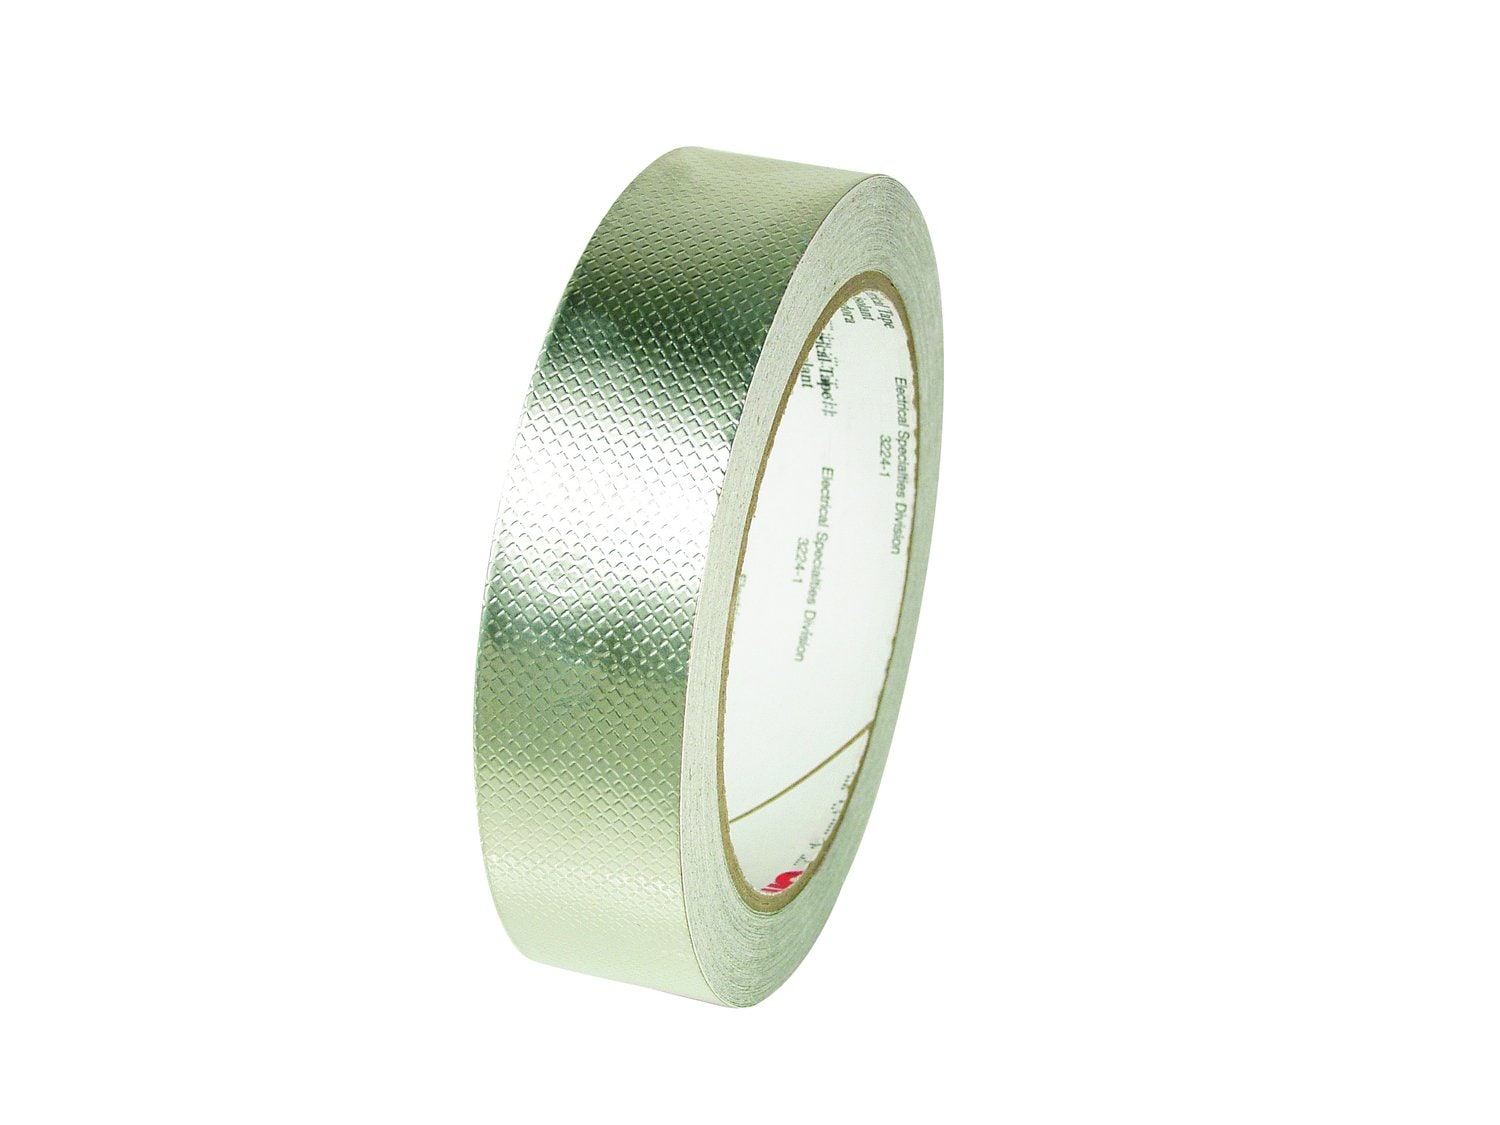 3M 1194 Shielding Foil Tape,3 in. x 6 Yd.,Copper